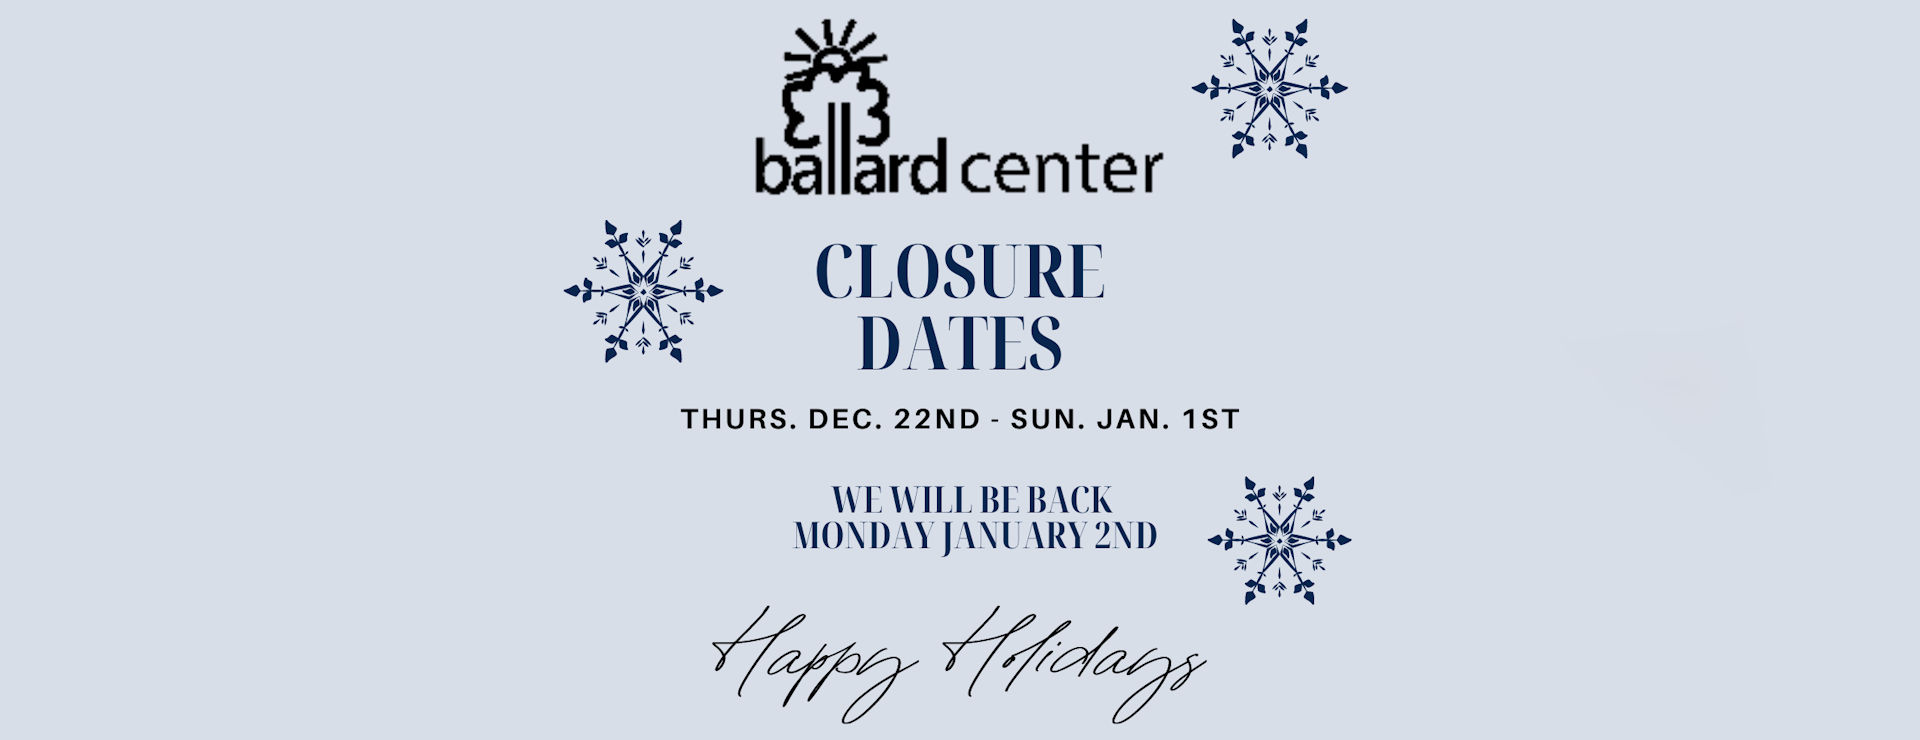 Ballard Center will be closed December 22nd thru January 1st